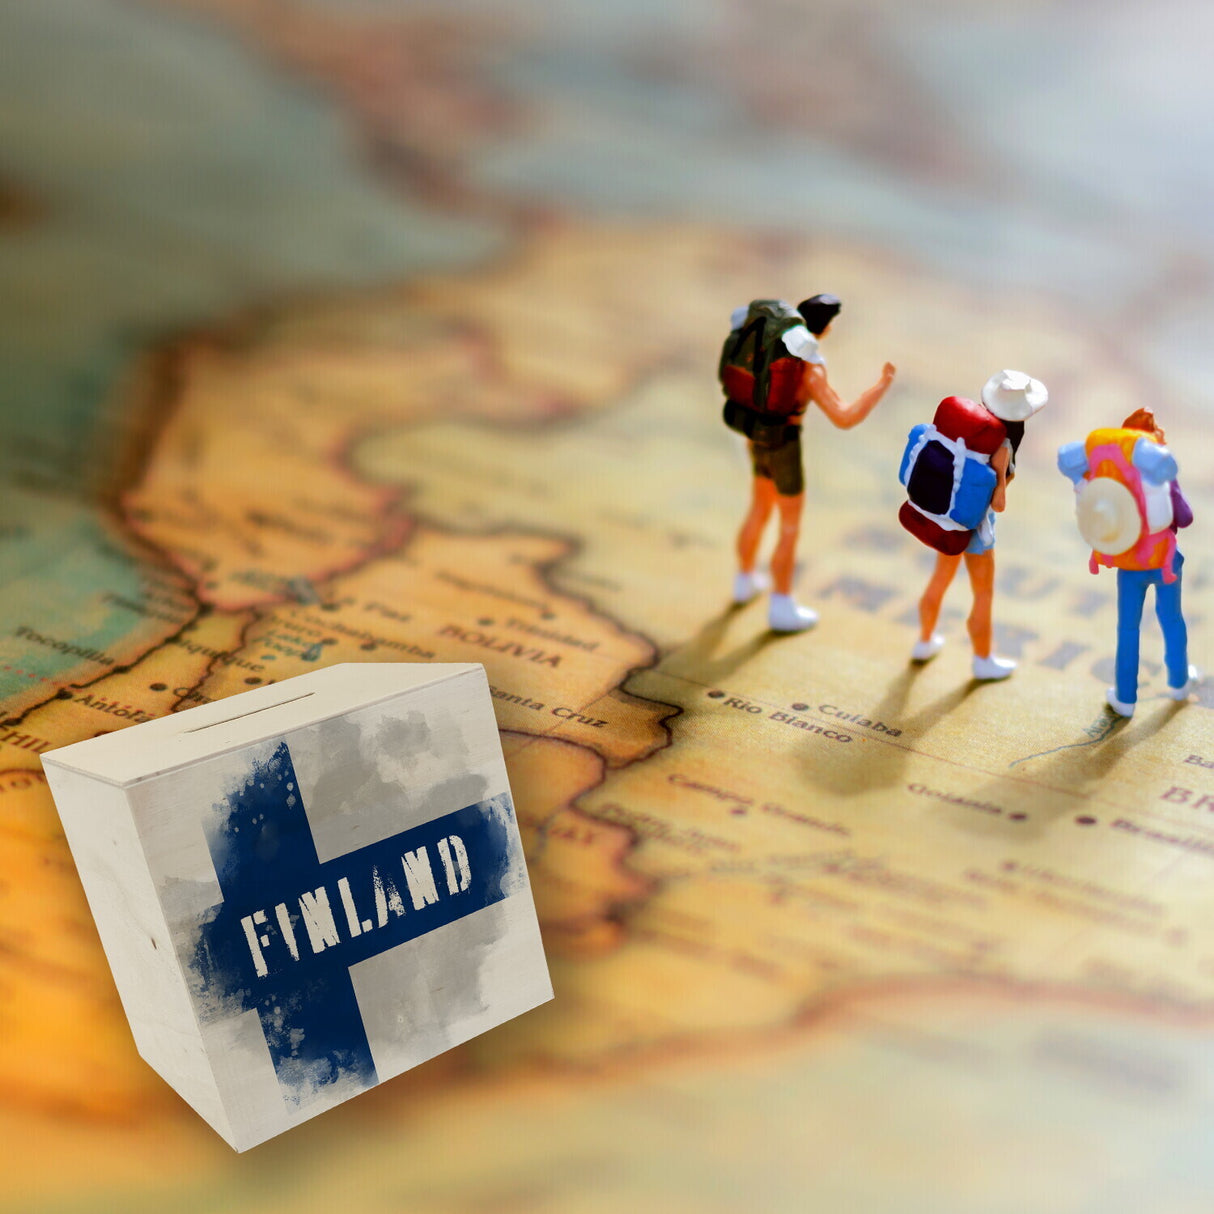 Spardose mit Finnland-Flagge im Used Look - Sparschwein für Urlauber